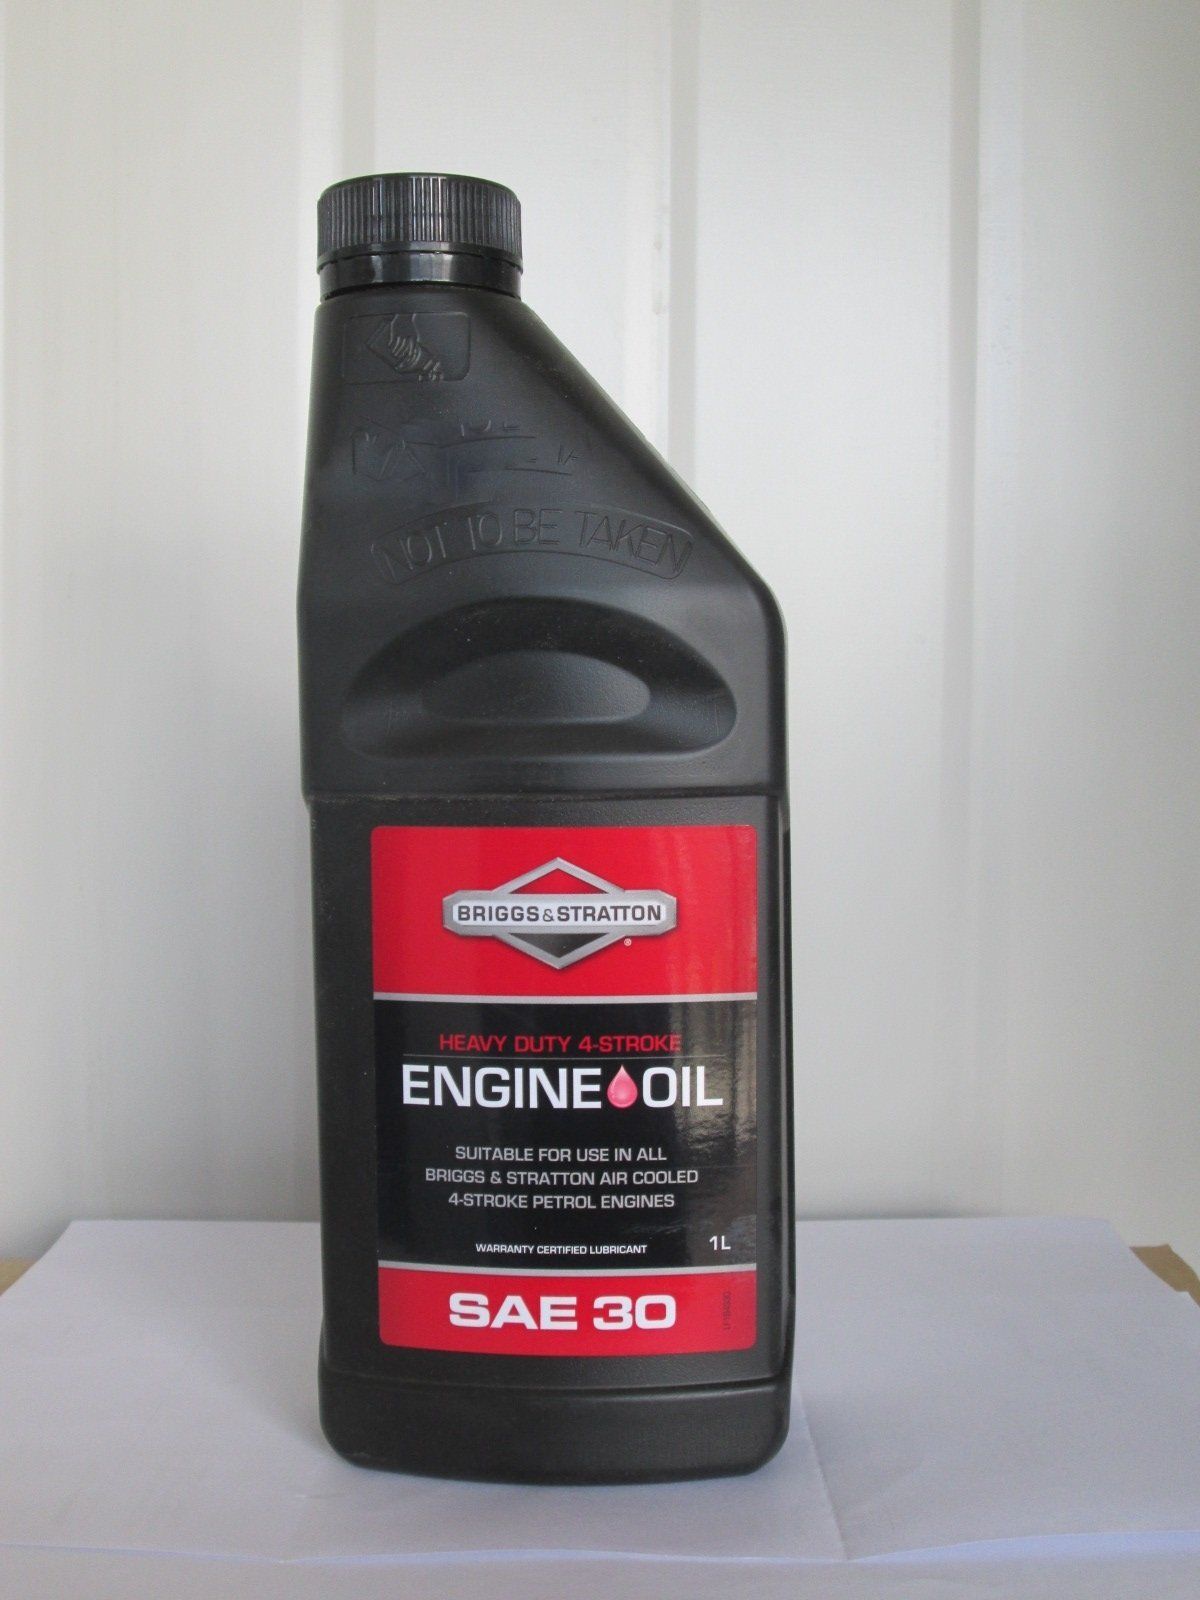 Briggs & Stratton engine oil